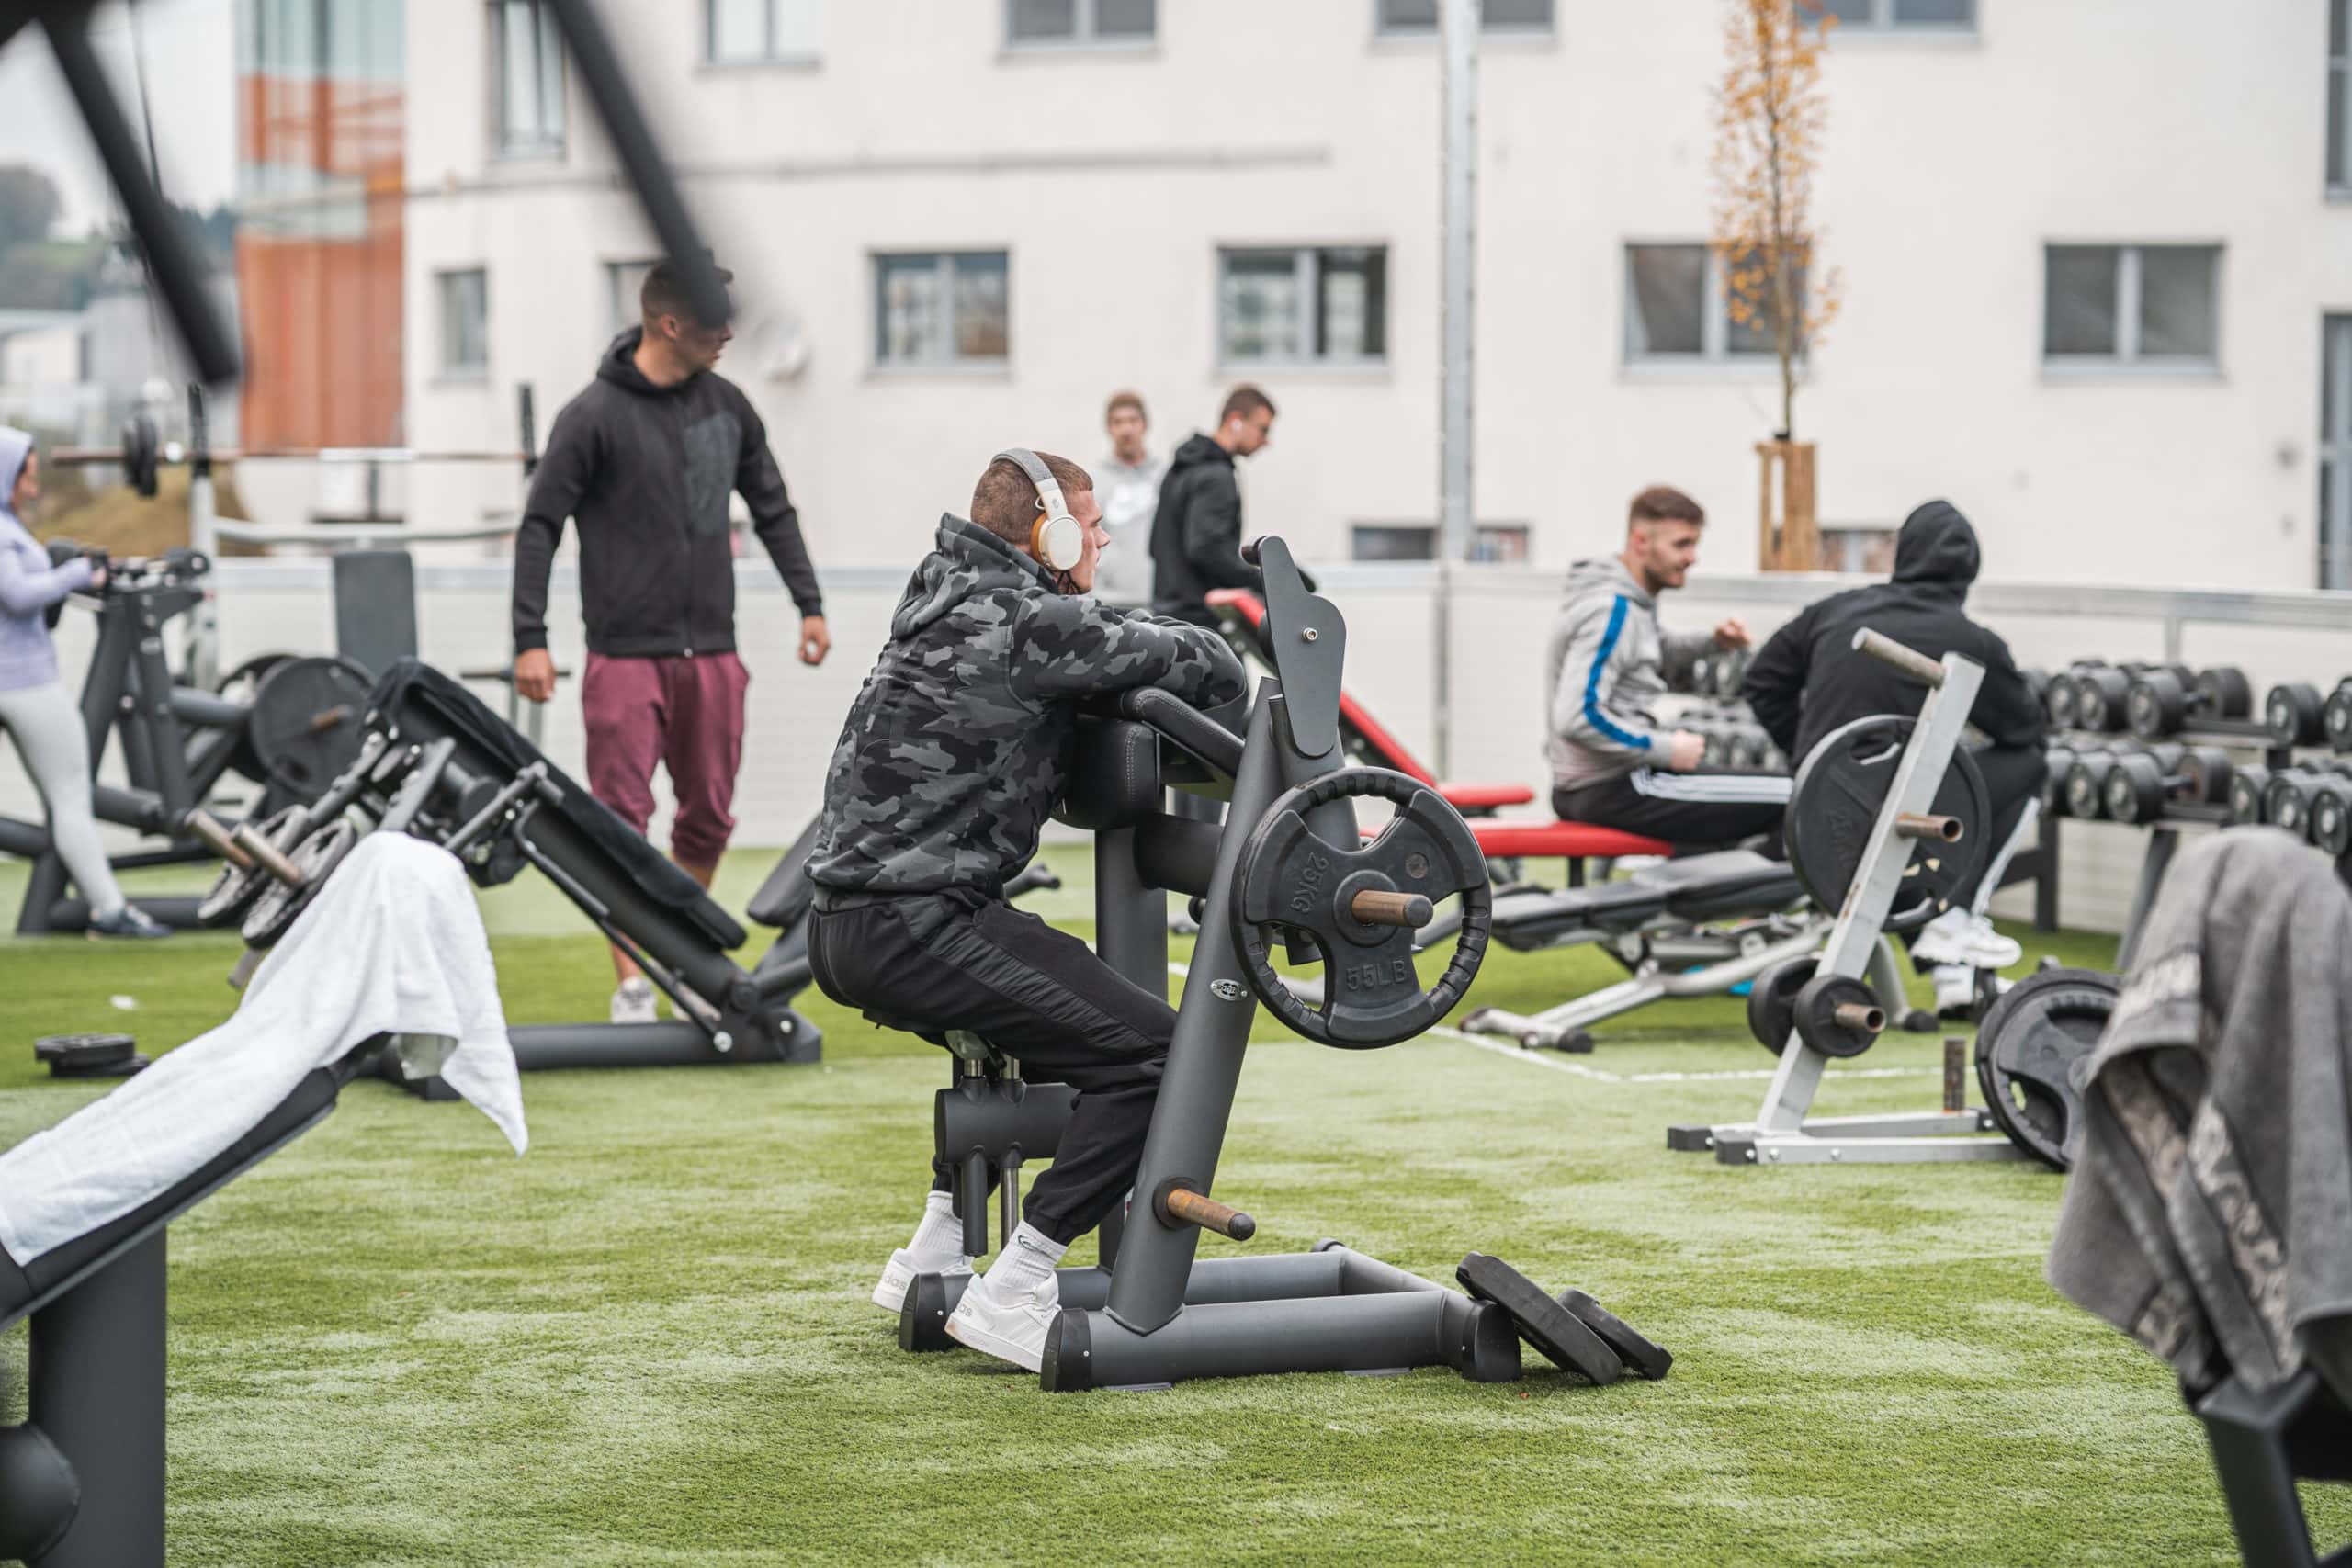 Auf knapp 400 Quadratmeter kann man im Outdoor-Fitnessbereich in Steyr unter freiem Himmel trainieren.